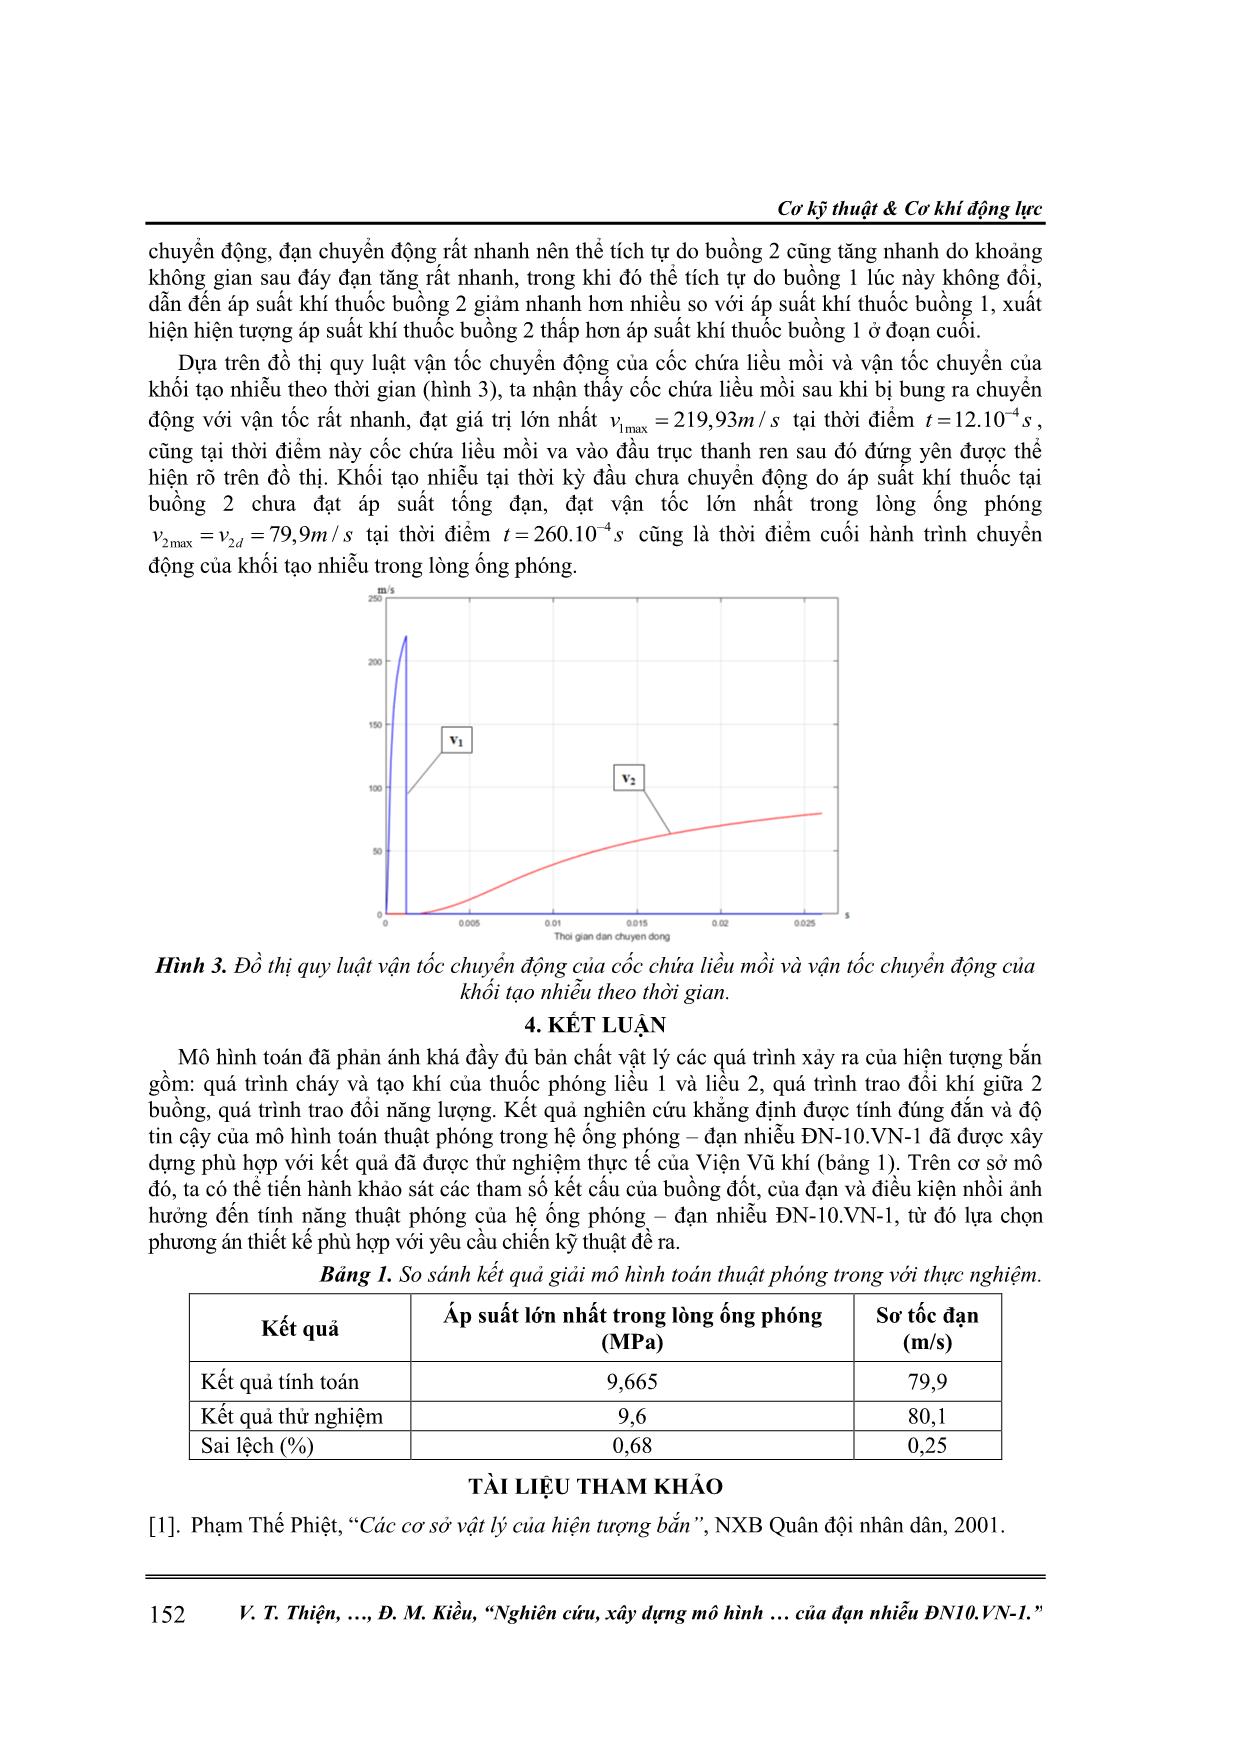 Nghiên cứu, xây dựng mô hình bài toán thuật phóng trong của đạn nhiễu ĐN10.VN-1 trang 7